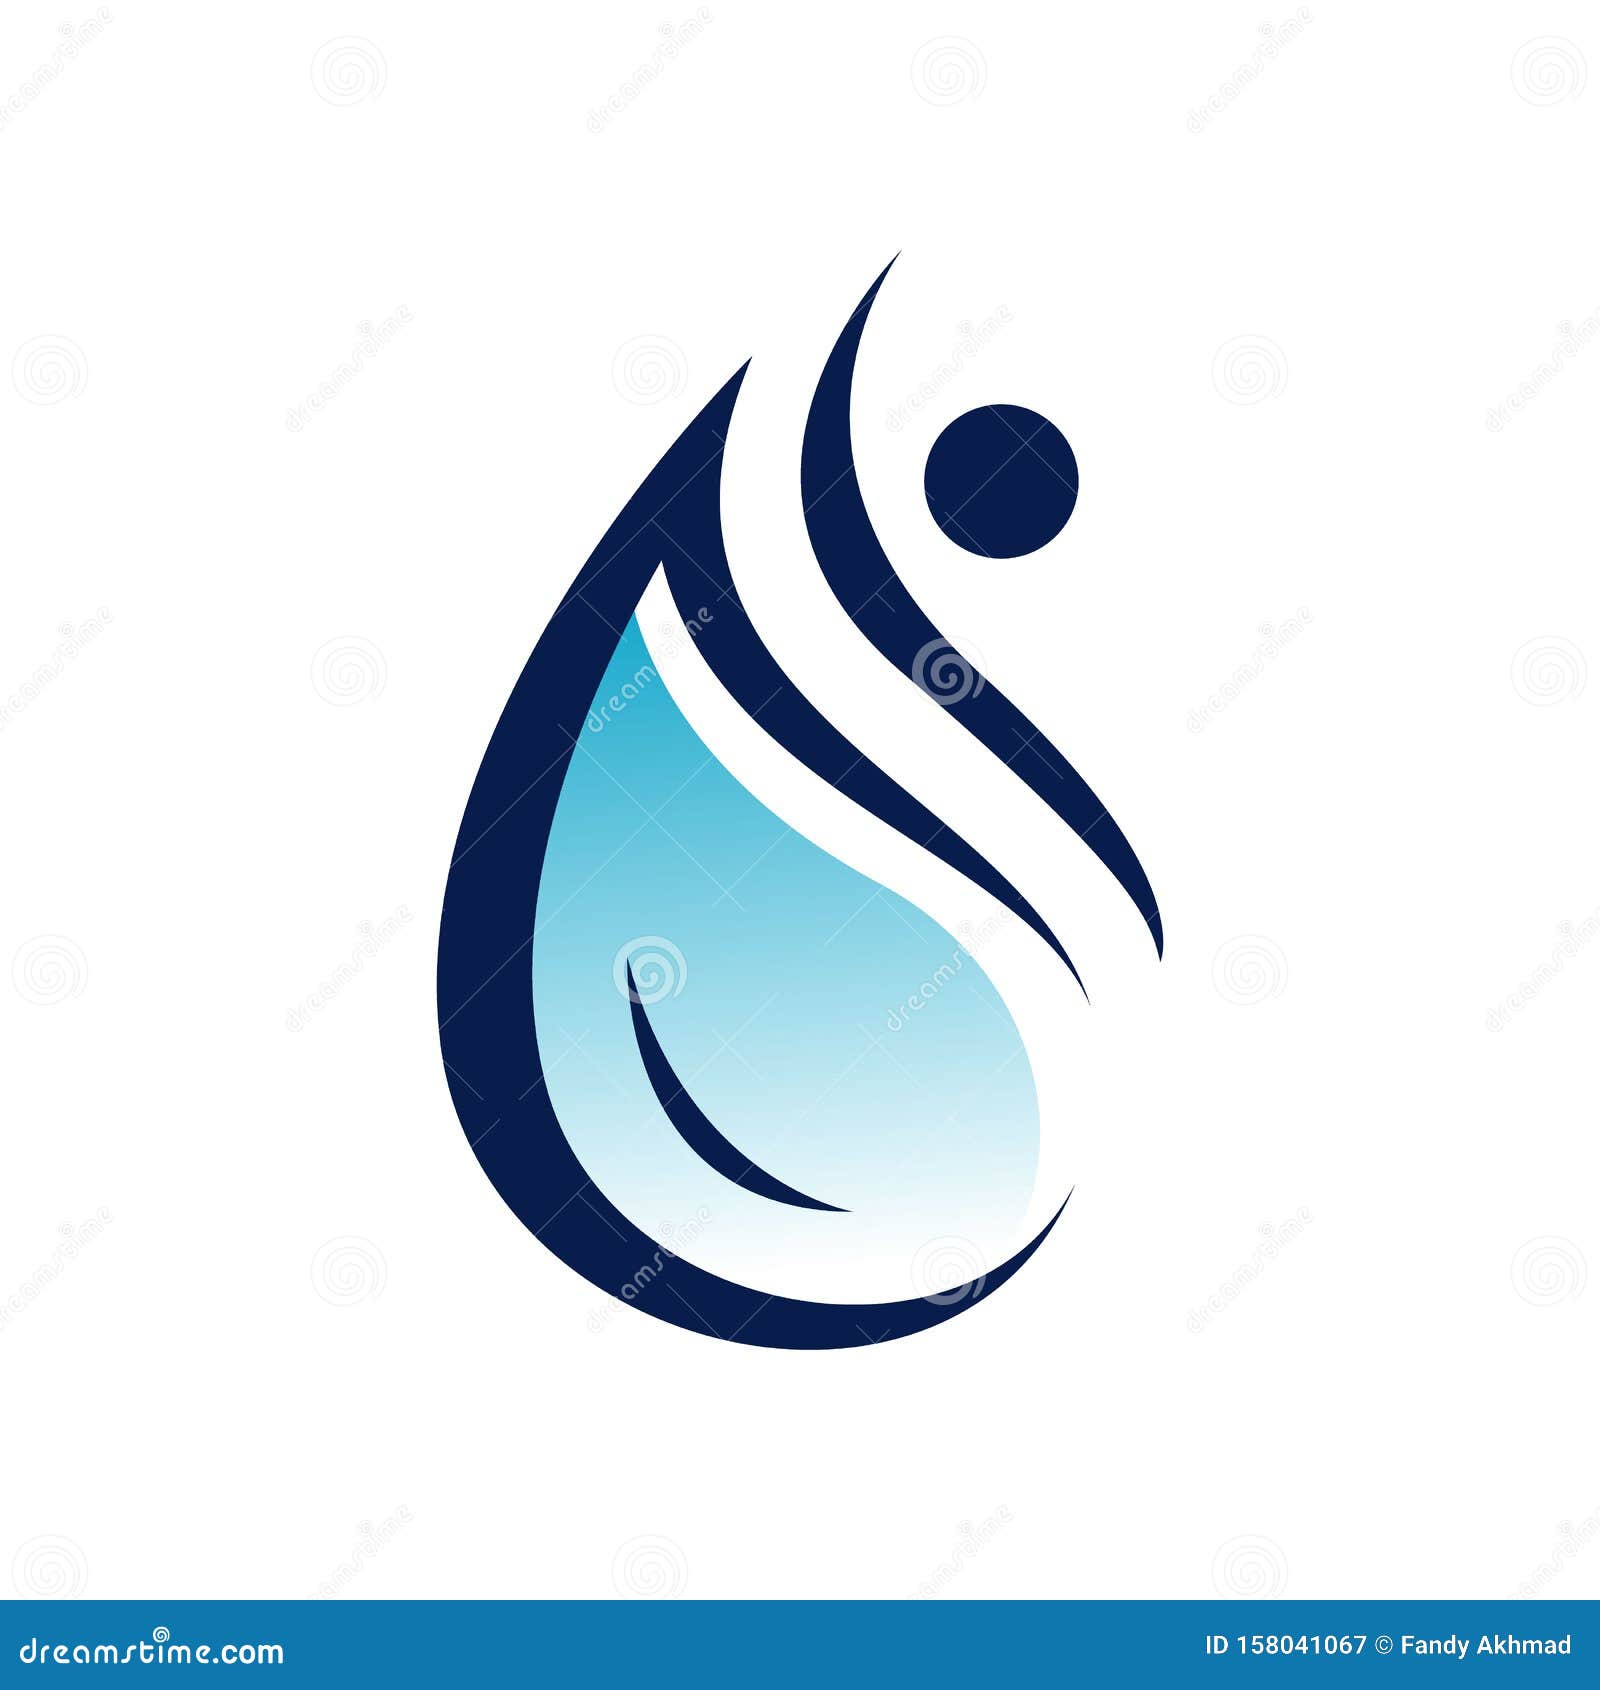 aqua drop water droplet logo eco mineral natural   template